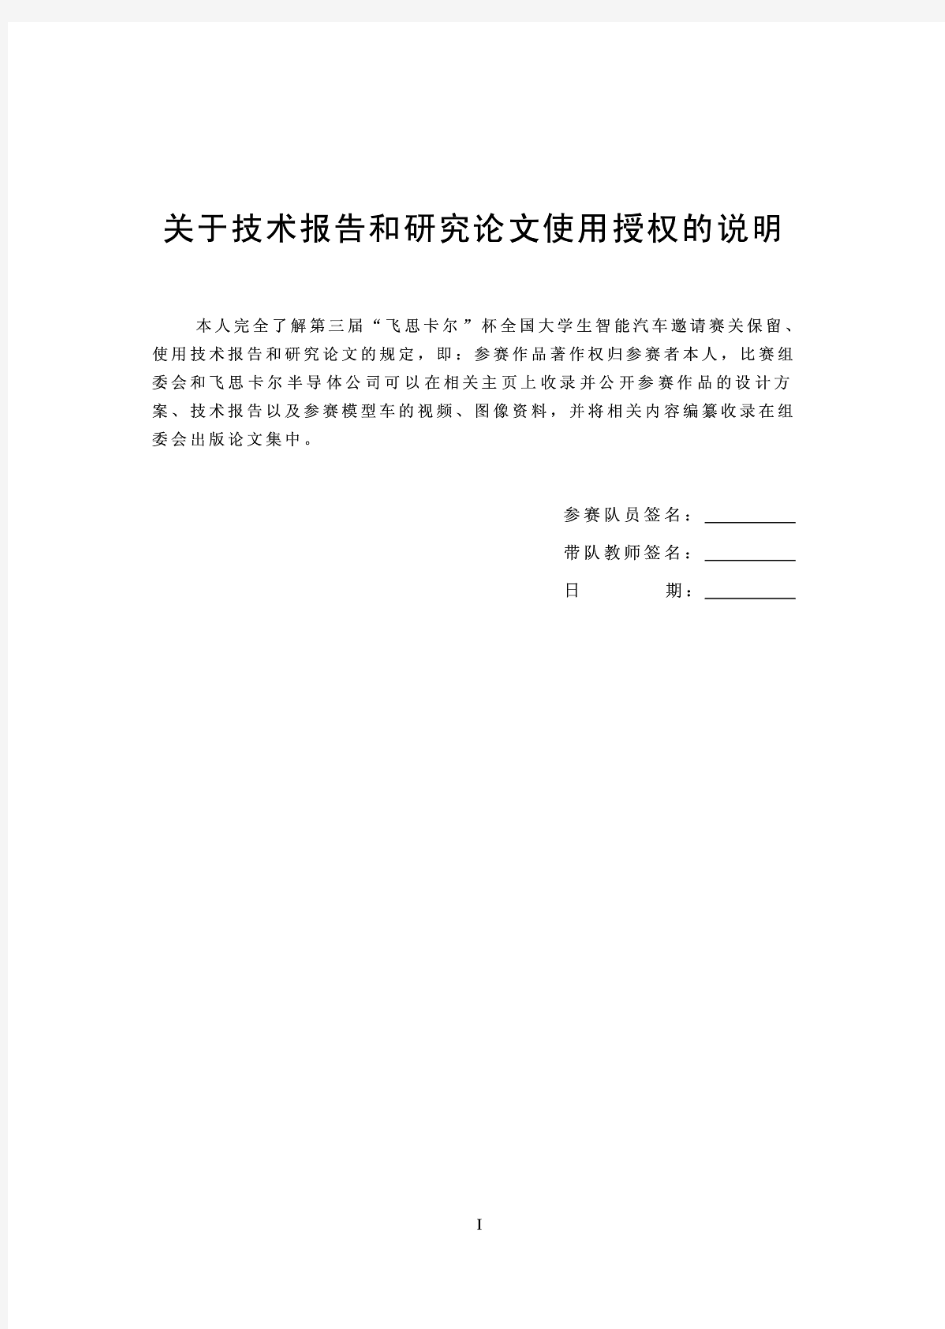 第三届飞思卡尔智能车-广东工业大学信之风技术报告